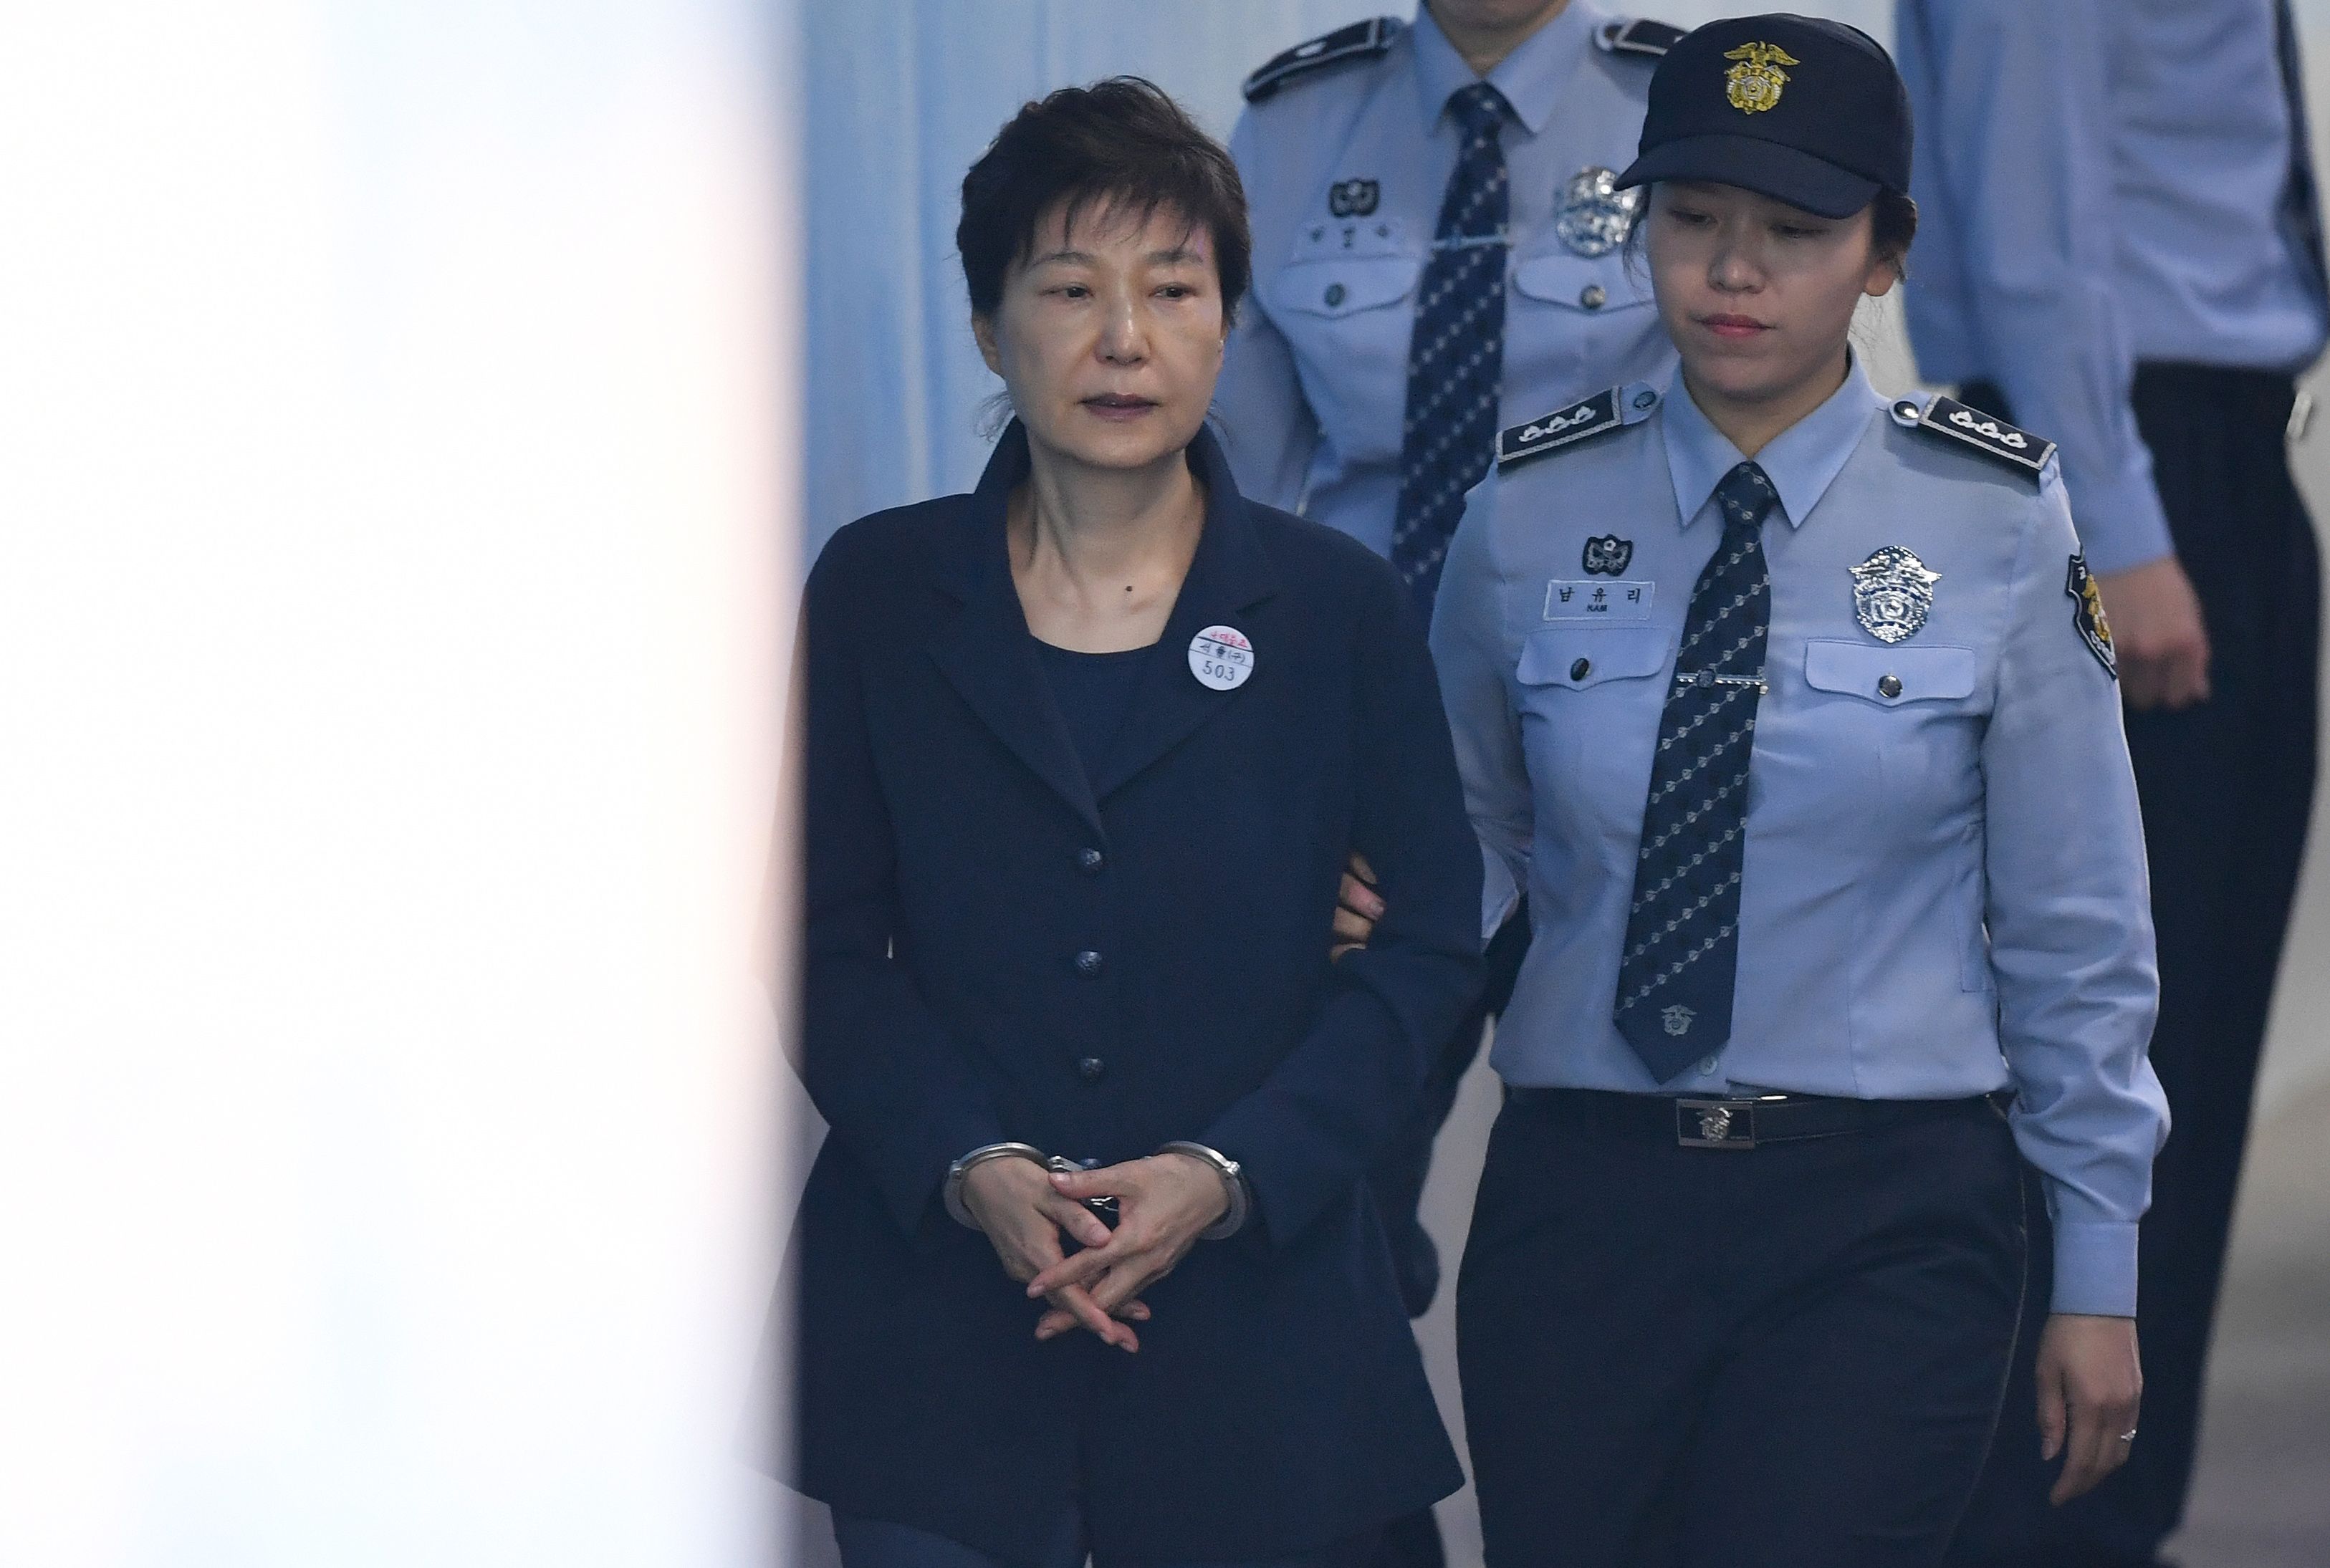 لحظة دخول رئيسة كوريا الجنوبية السابقة بـالكلابشات إلى قاعة المحكمة